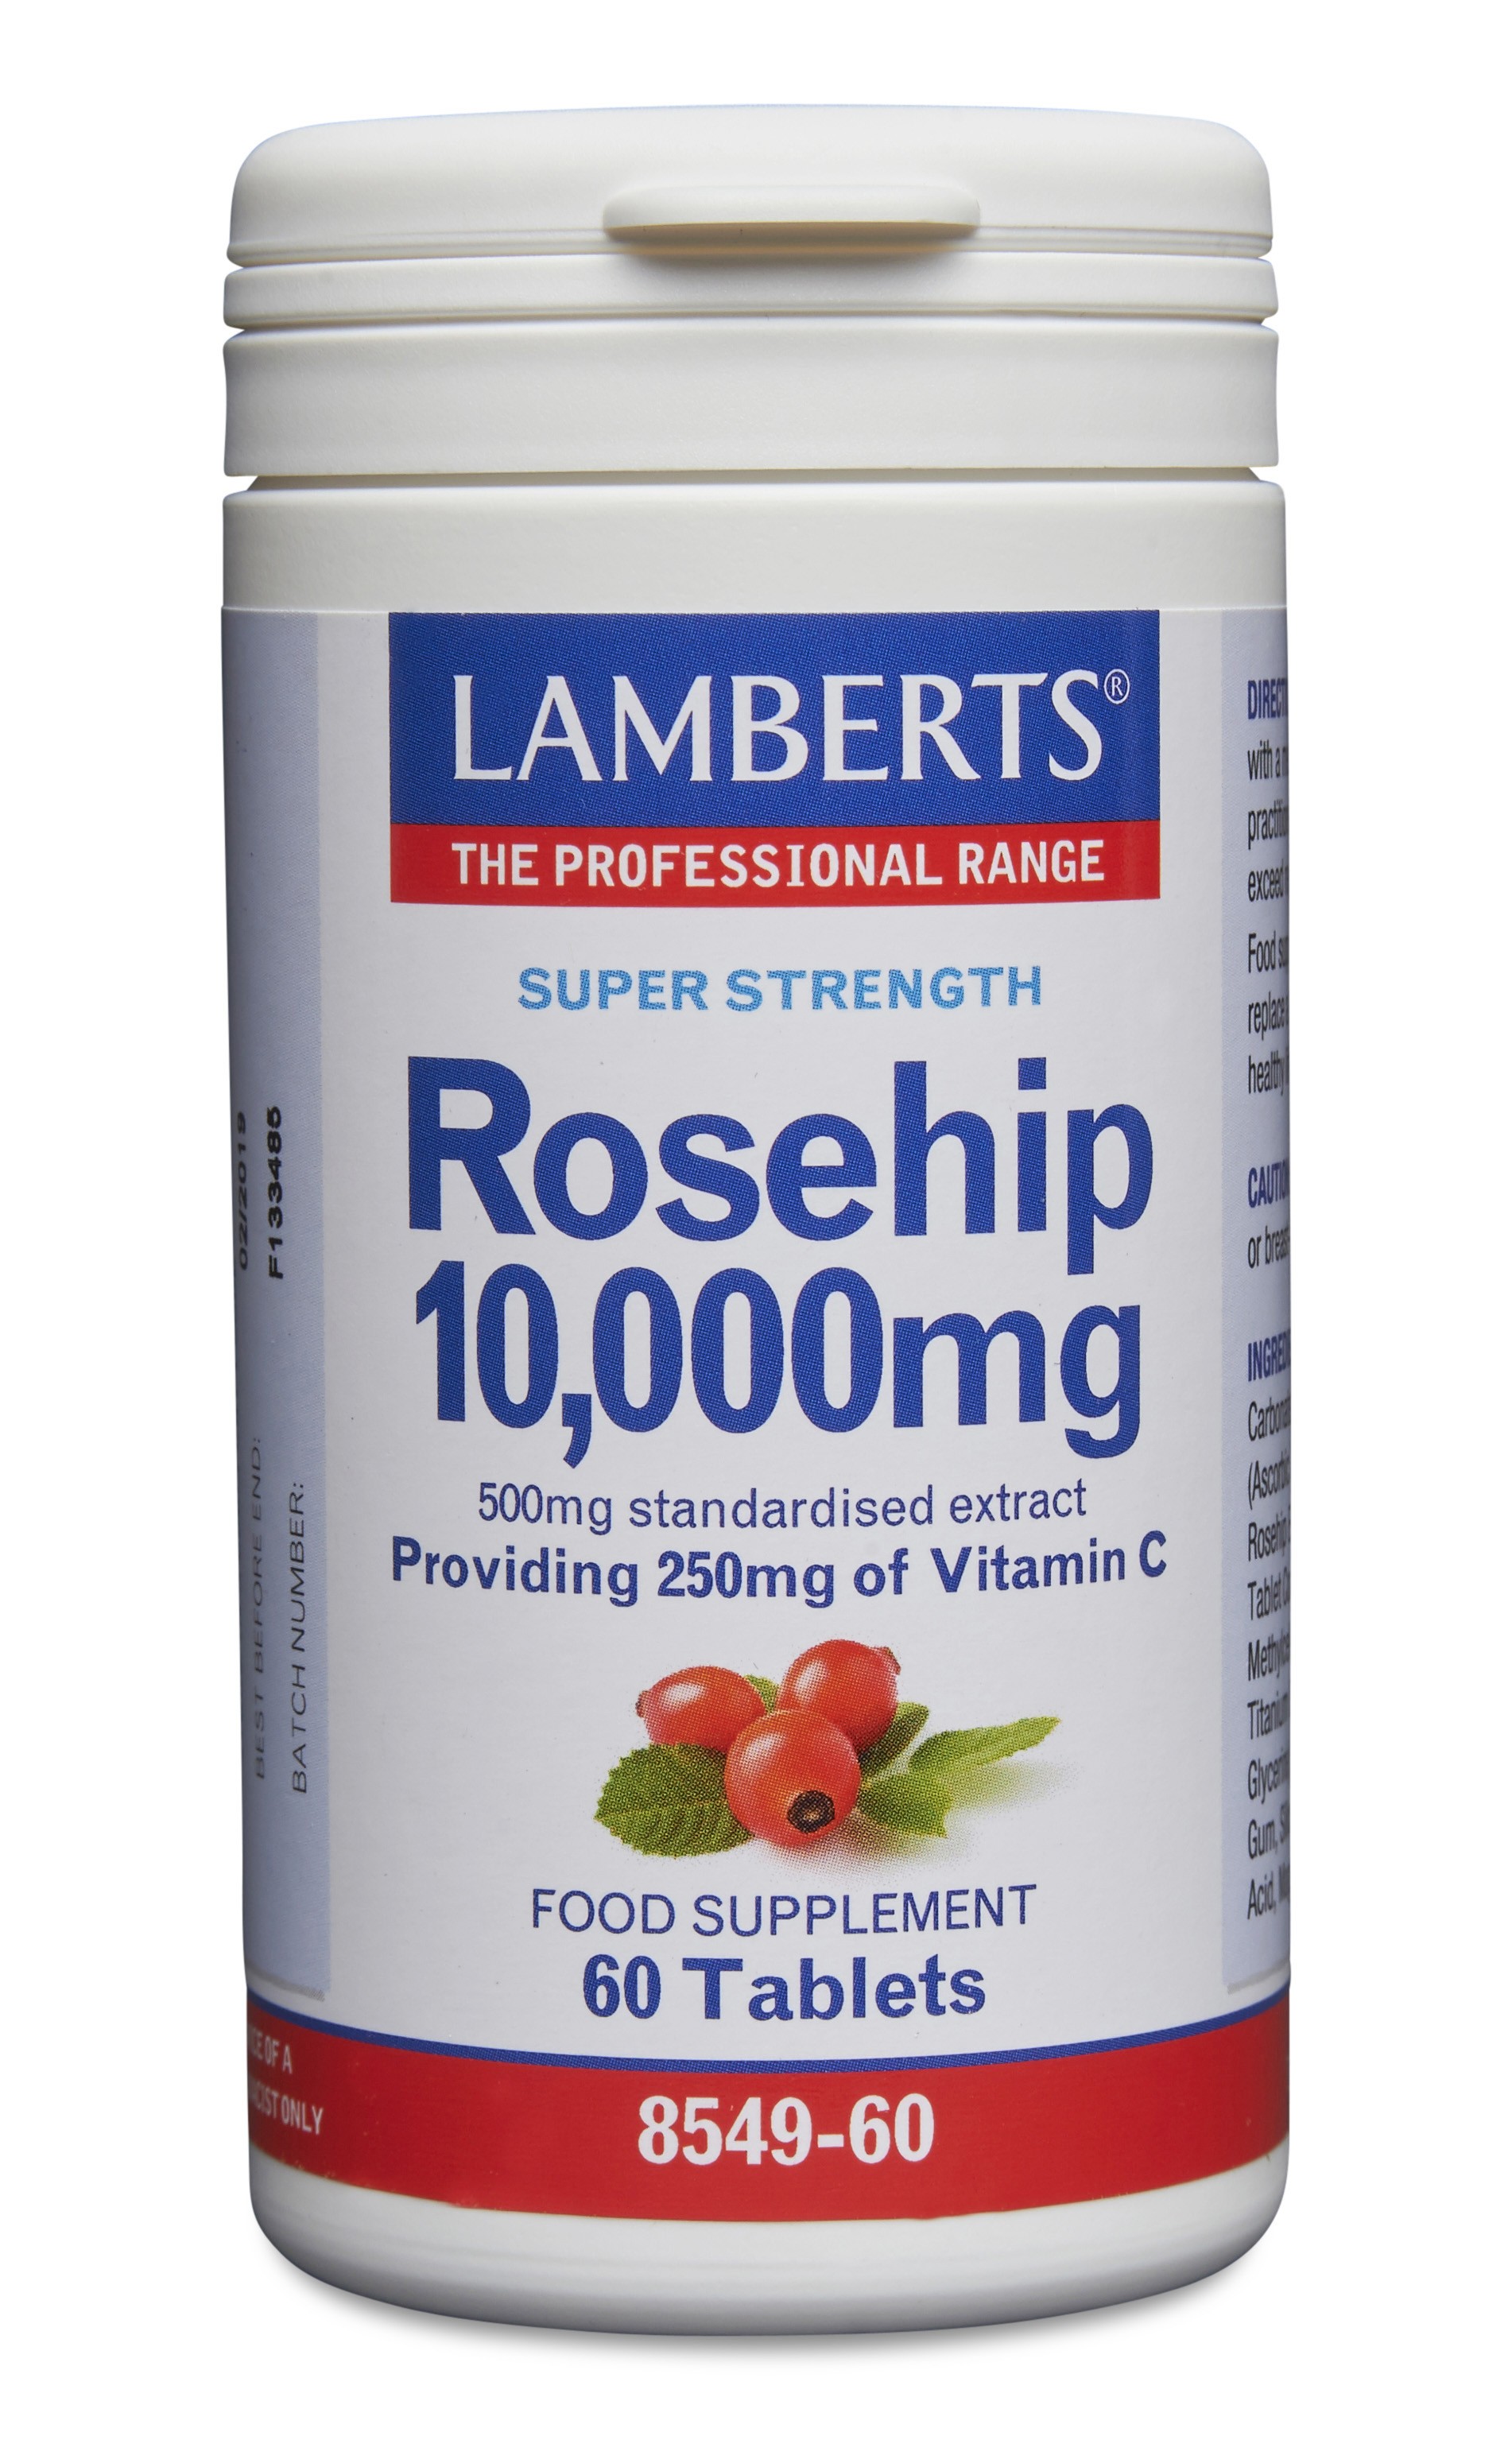 Lamberts Rosehip 10,000mg